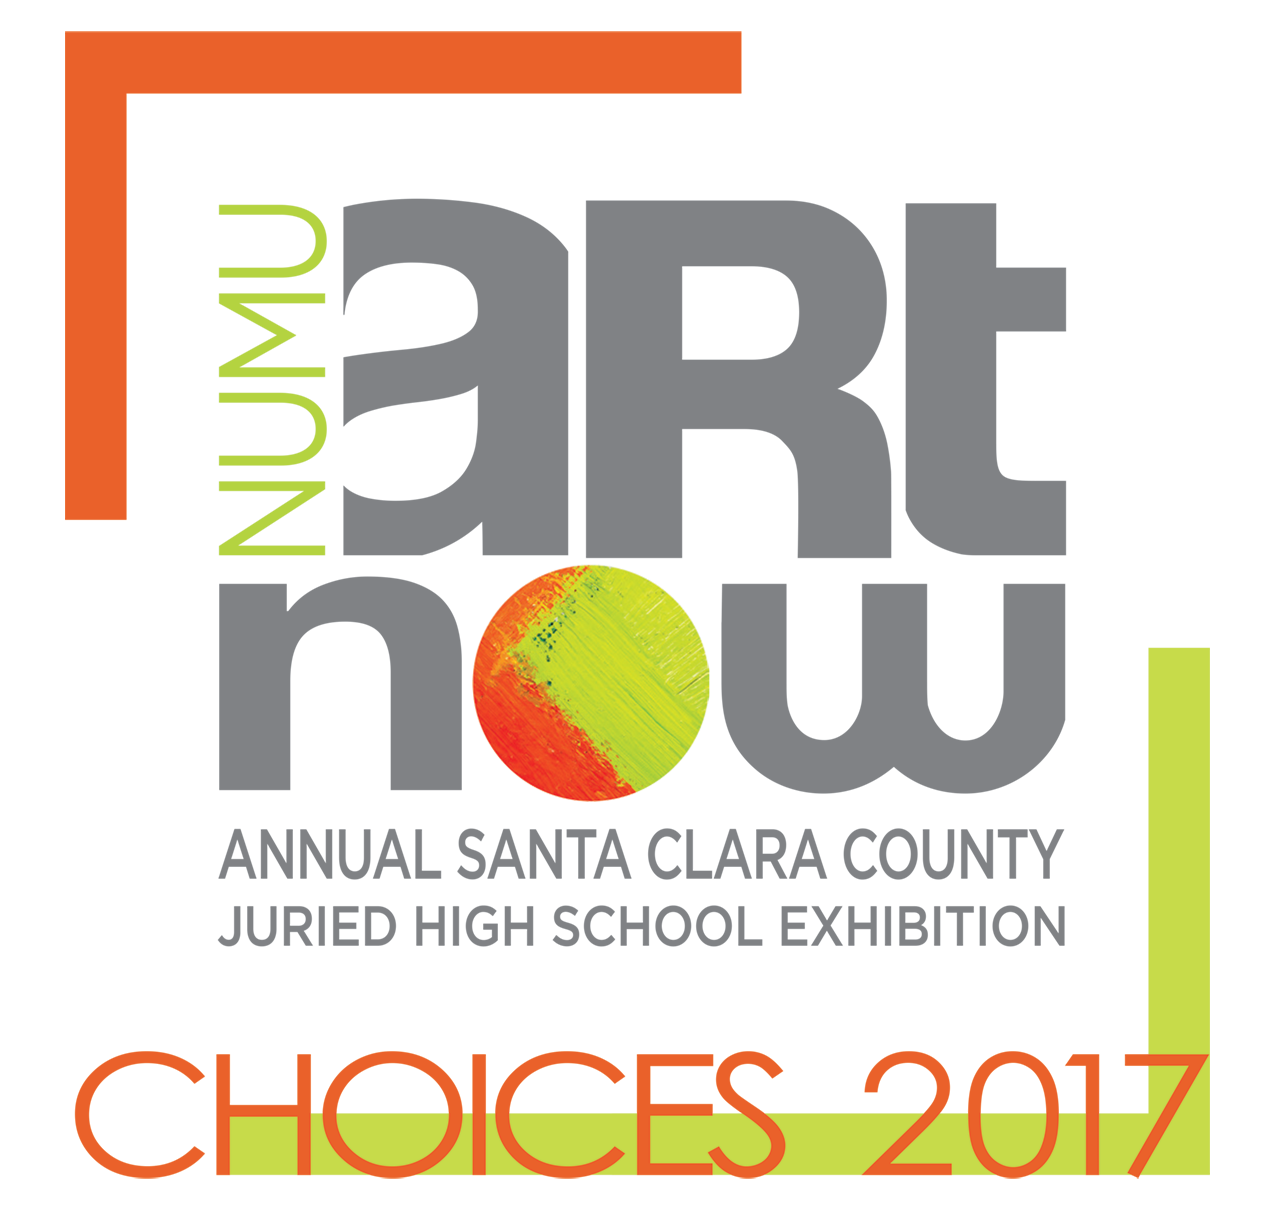 ArtNow 2017 Choices